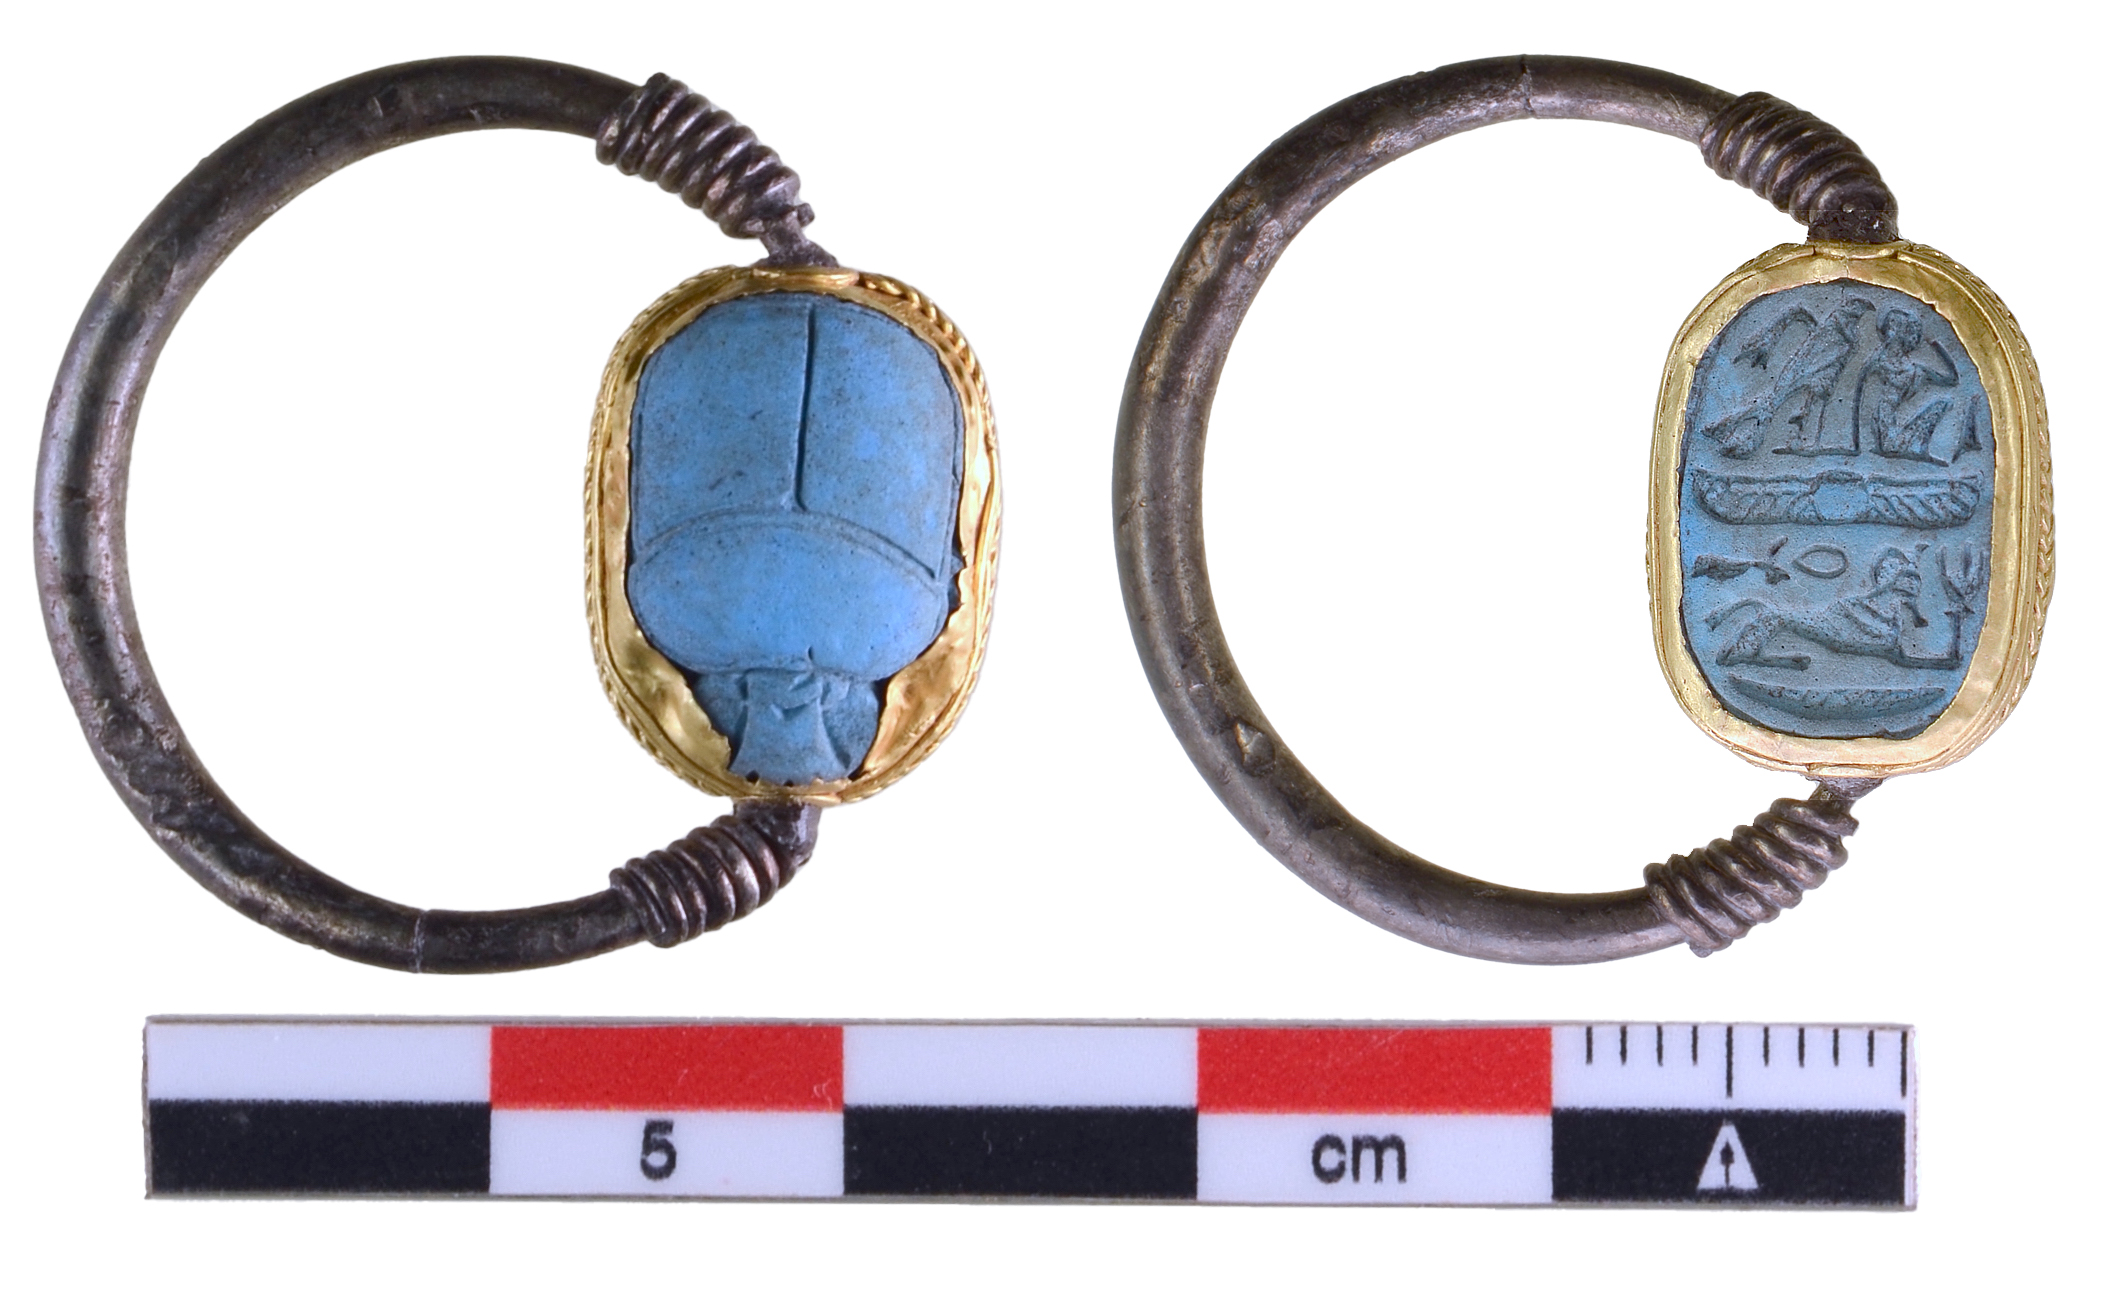 Εύβοια: Σπάνια ευρήματα σε ανασκαφές – Το μοναδικό δαχτυλίδι με τον σκαραβαίο